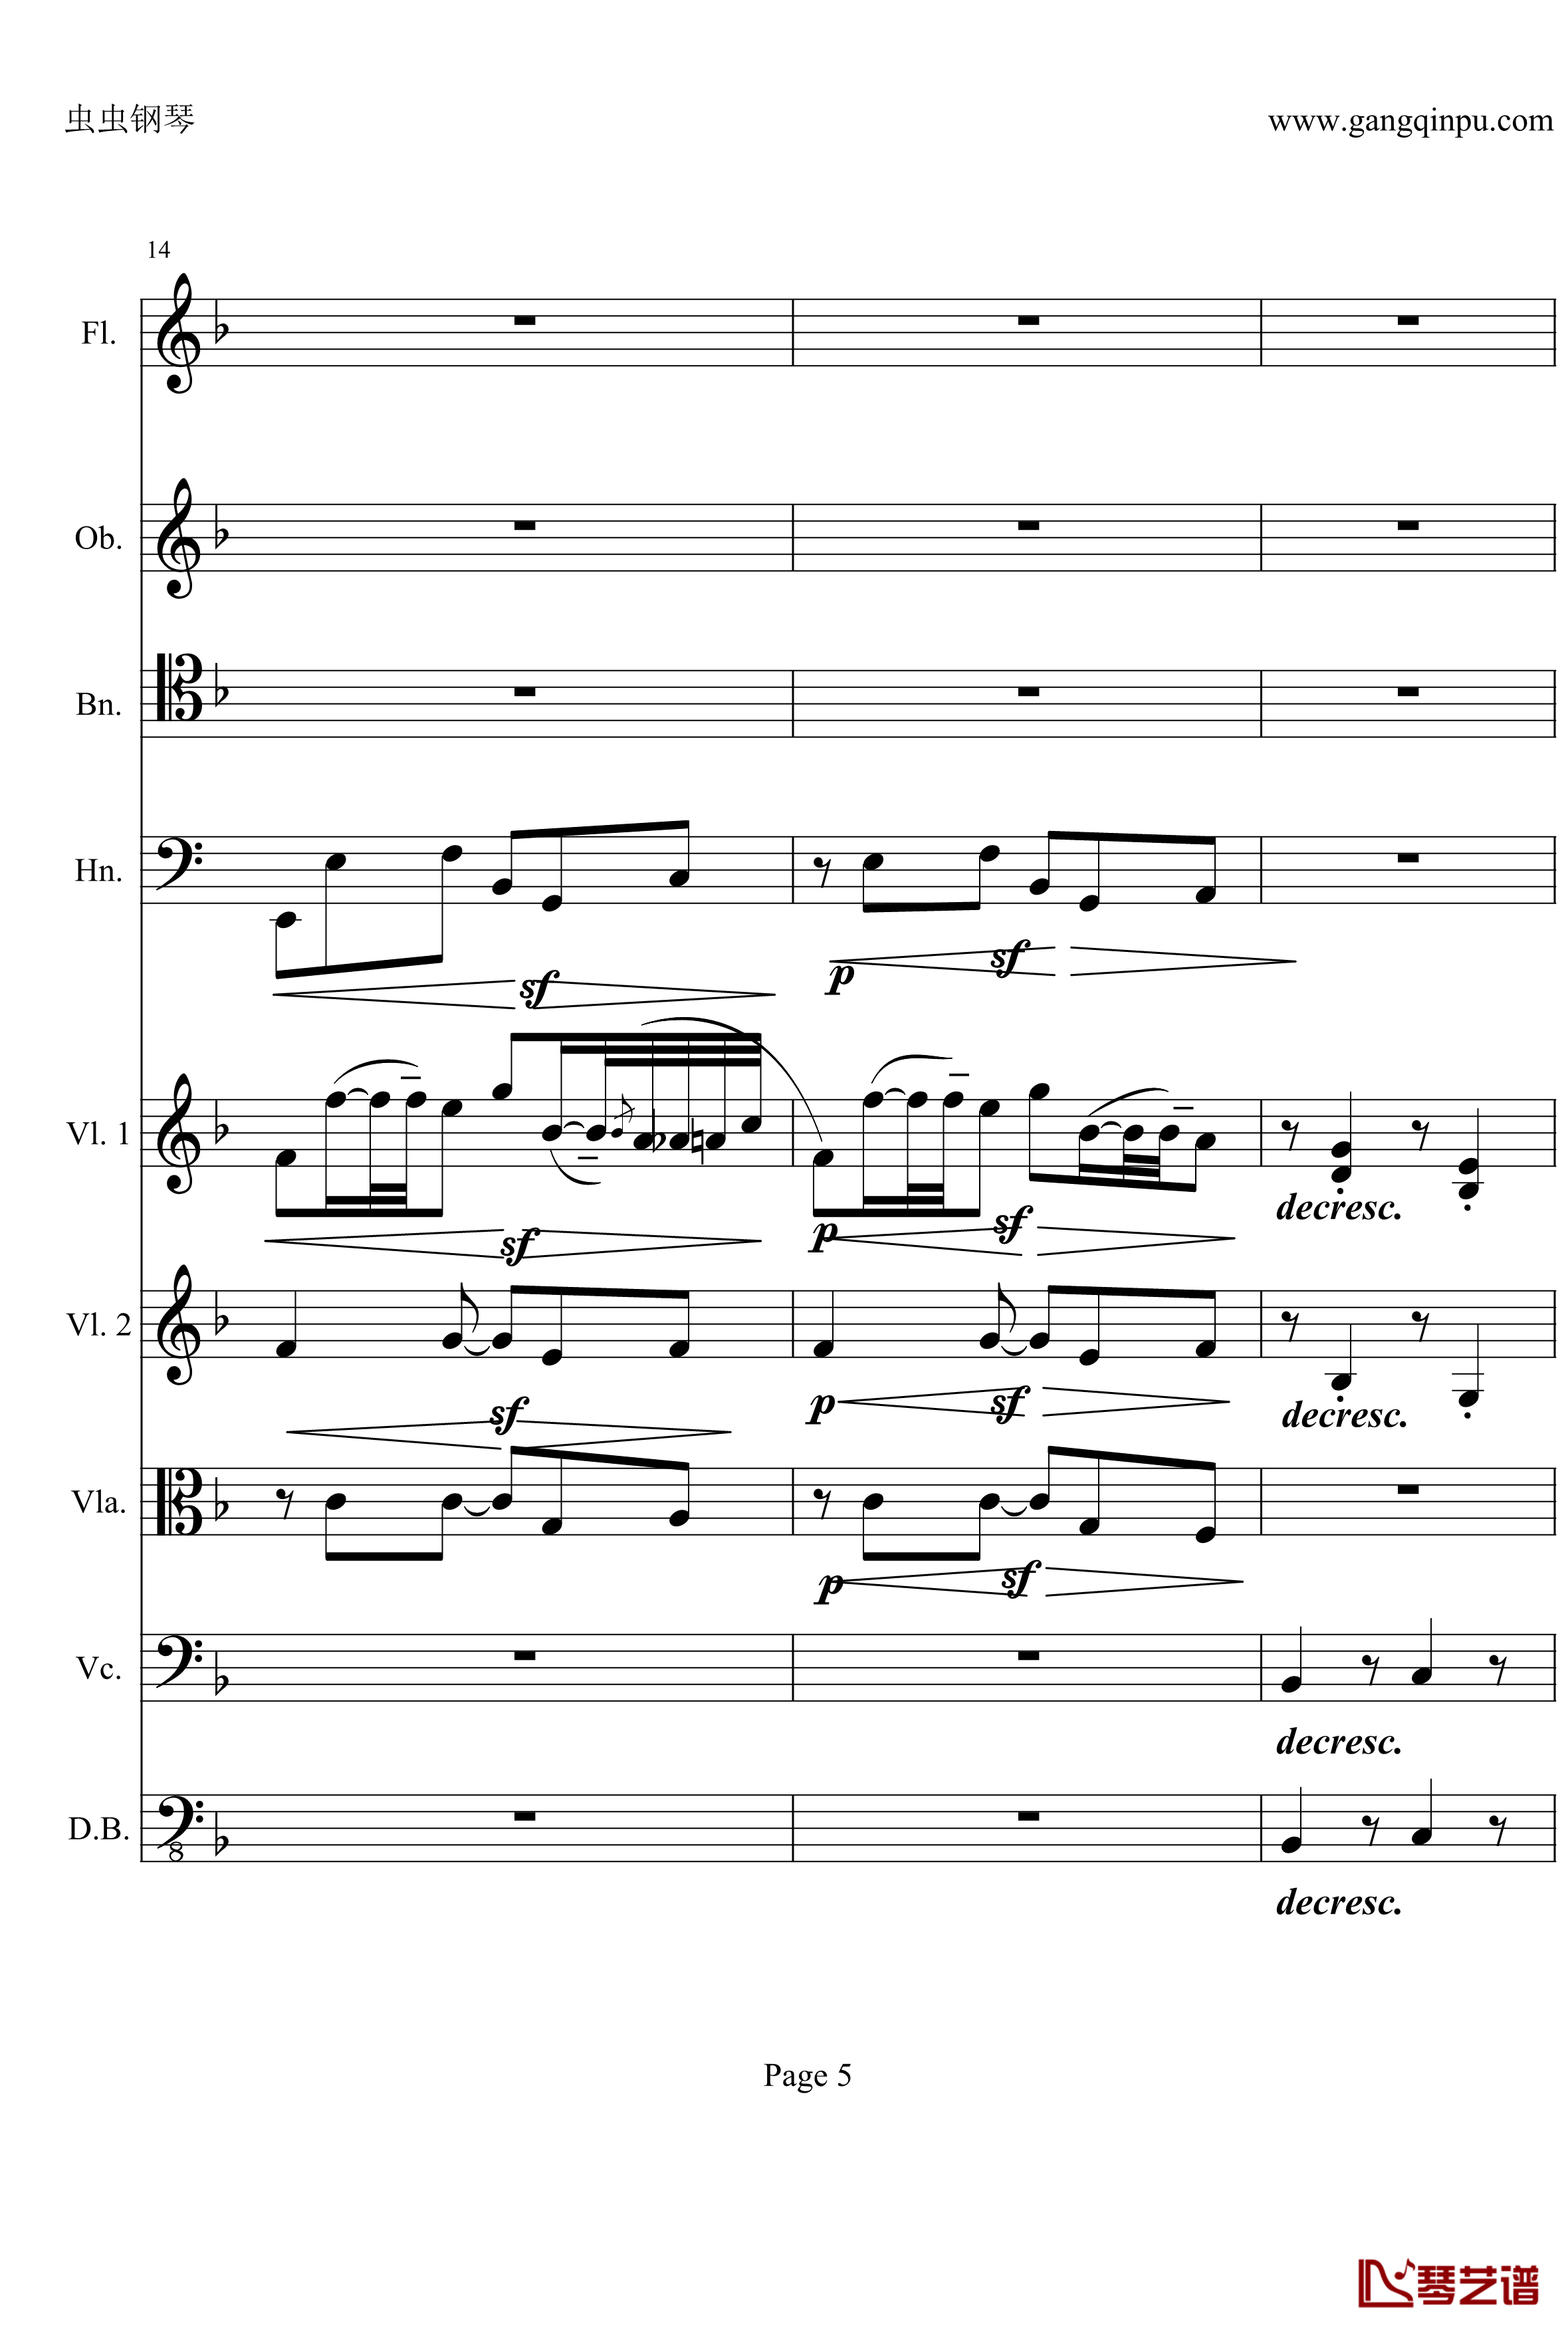 奏鸣曲之交响钢琴谱-第21-Ⅱ-贝多芬-beethoven5